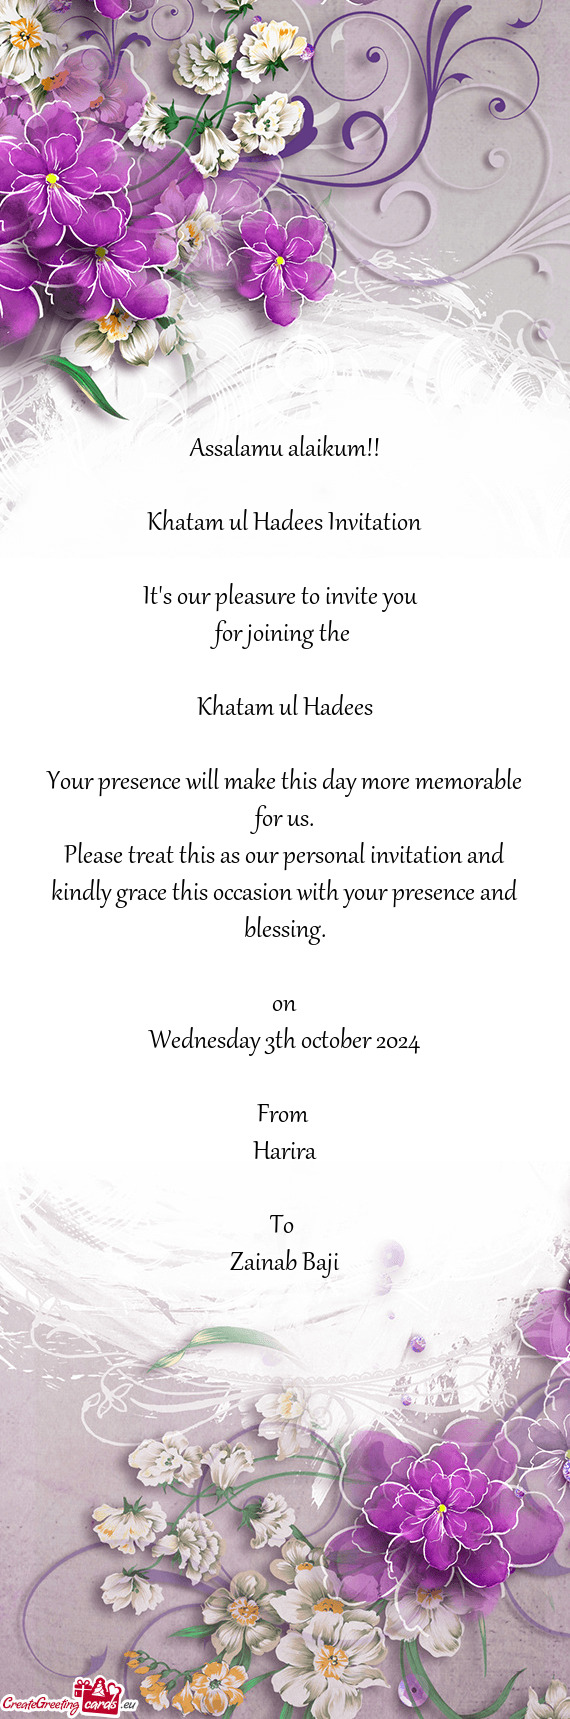 Khatam ul Hadees Invitation